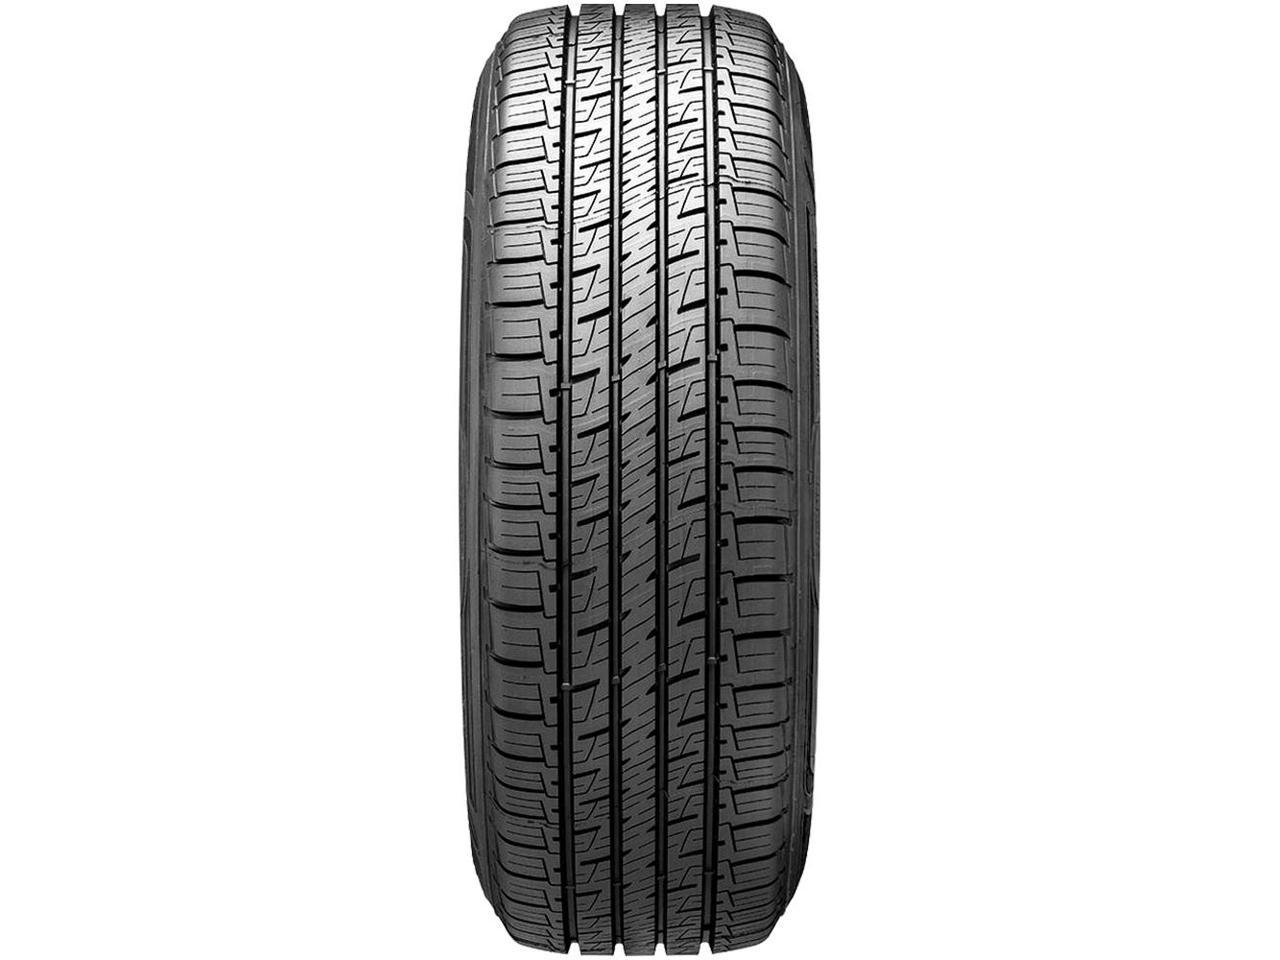 Goodyear assurance all-season P245/60R18 105H bsw all-season tire 